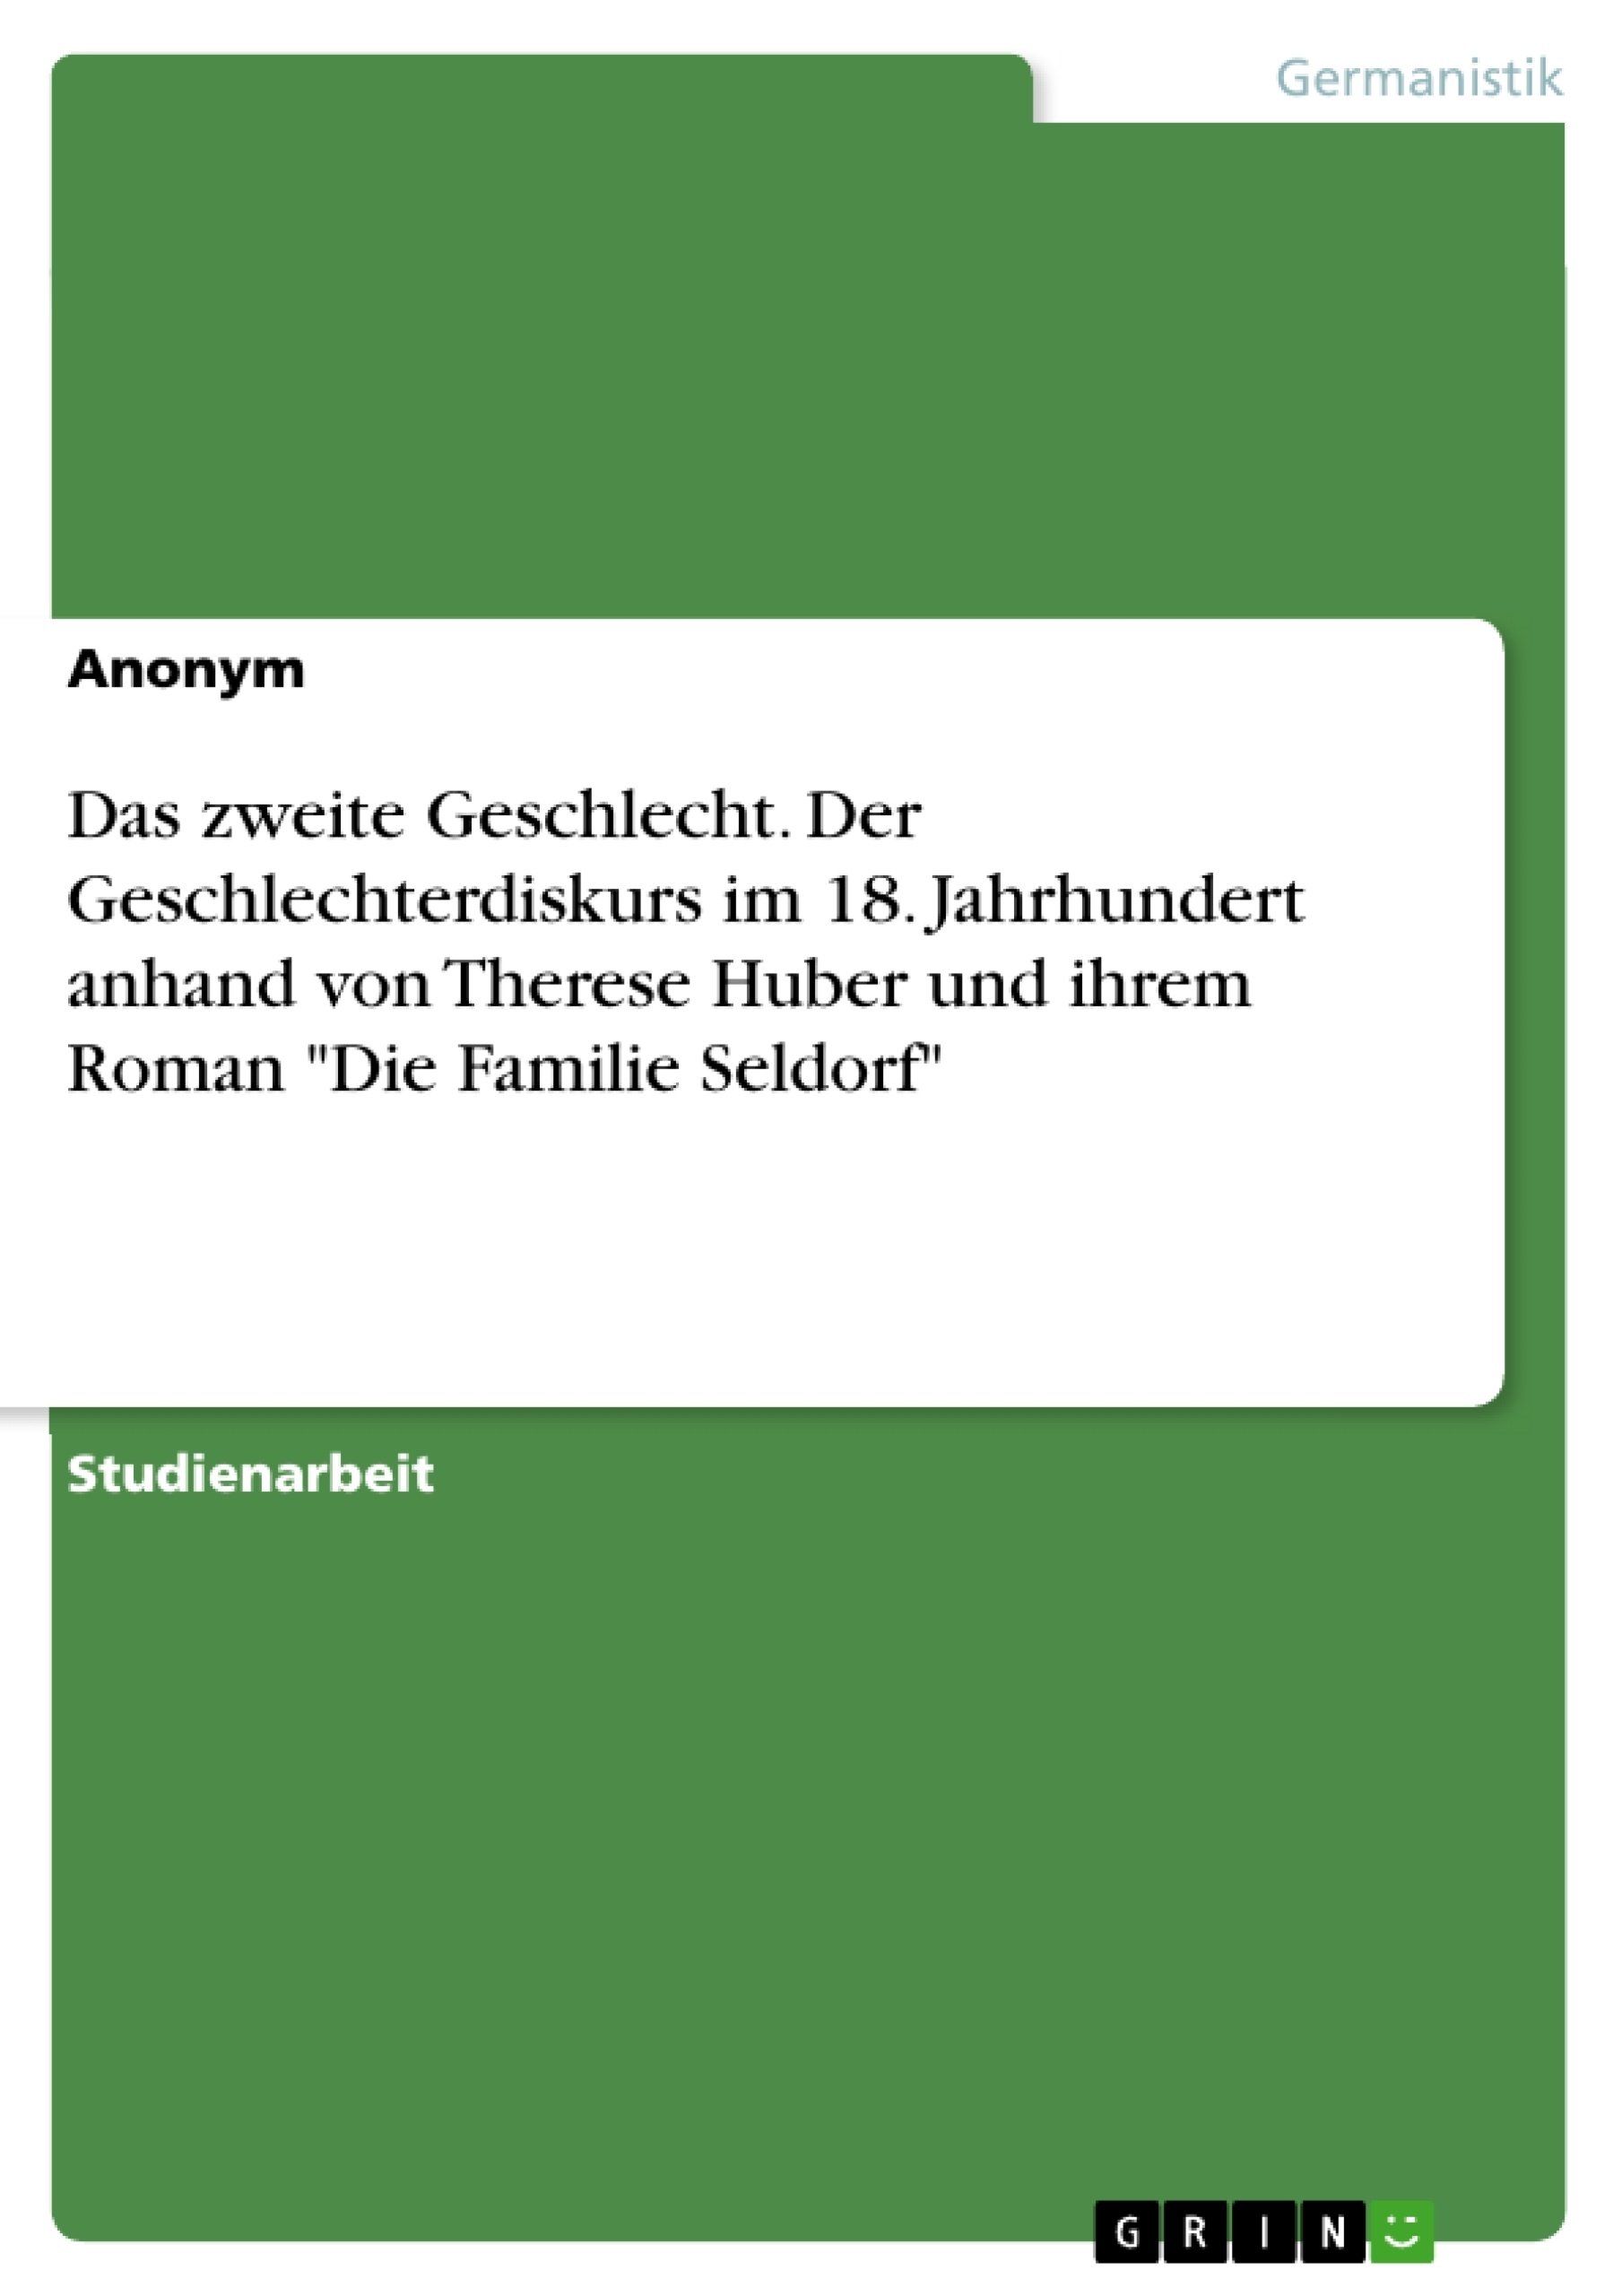 Titel: Das zweite Geschlecht. Der Geschlechterdiskurs im 18. Jahrhundert anhand von Therese Huber und ihrem Roman "Die Familie Seldorf"